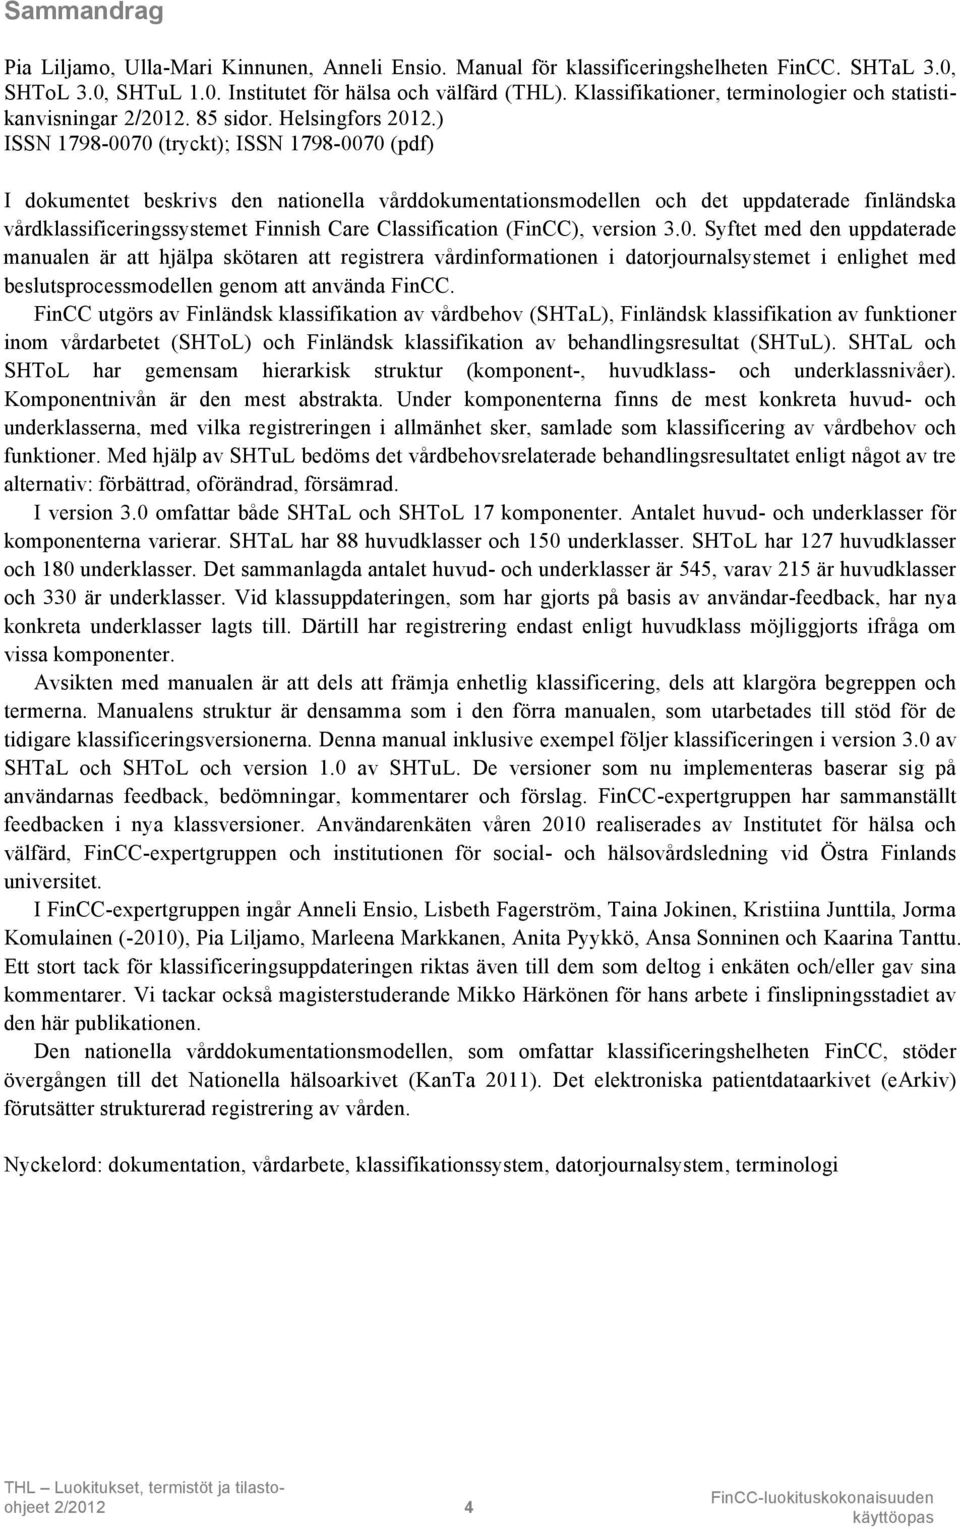 ) ISSN 1798-0070 (tryckt); ISSN 1798-0070 (pdf) I dokumentet beskrivs den nationella vårddokumentationsmodellen och det uppdaterade finländska vårdklassificeringssystemet Finnish Care Classification